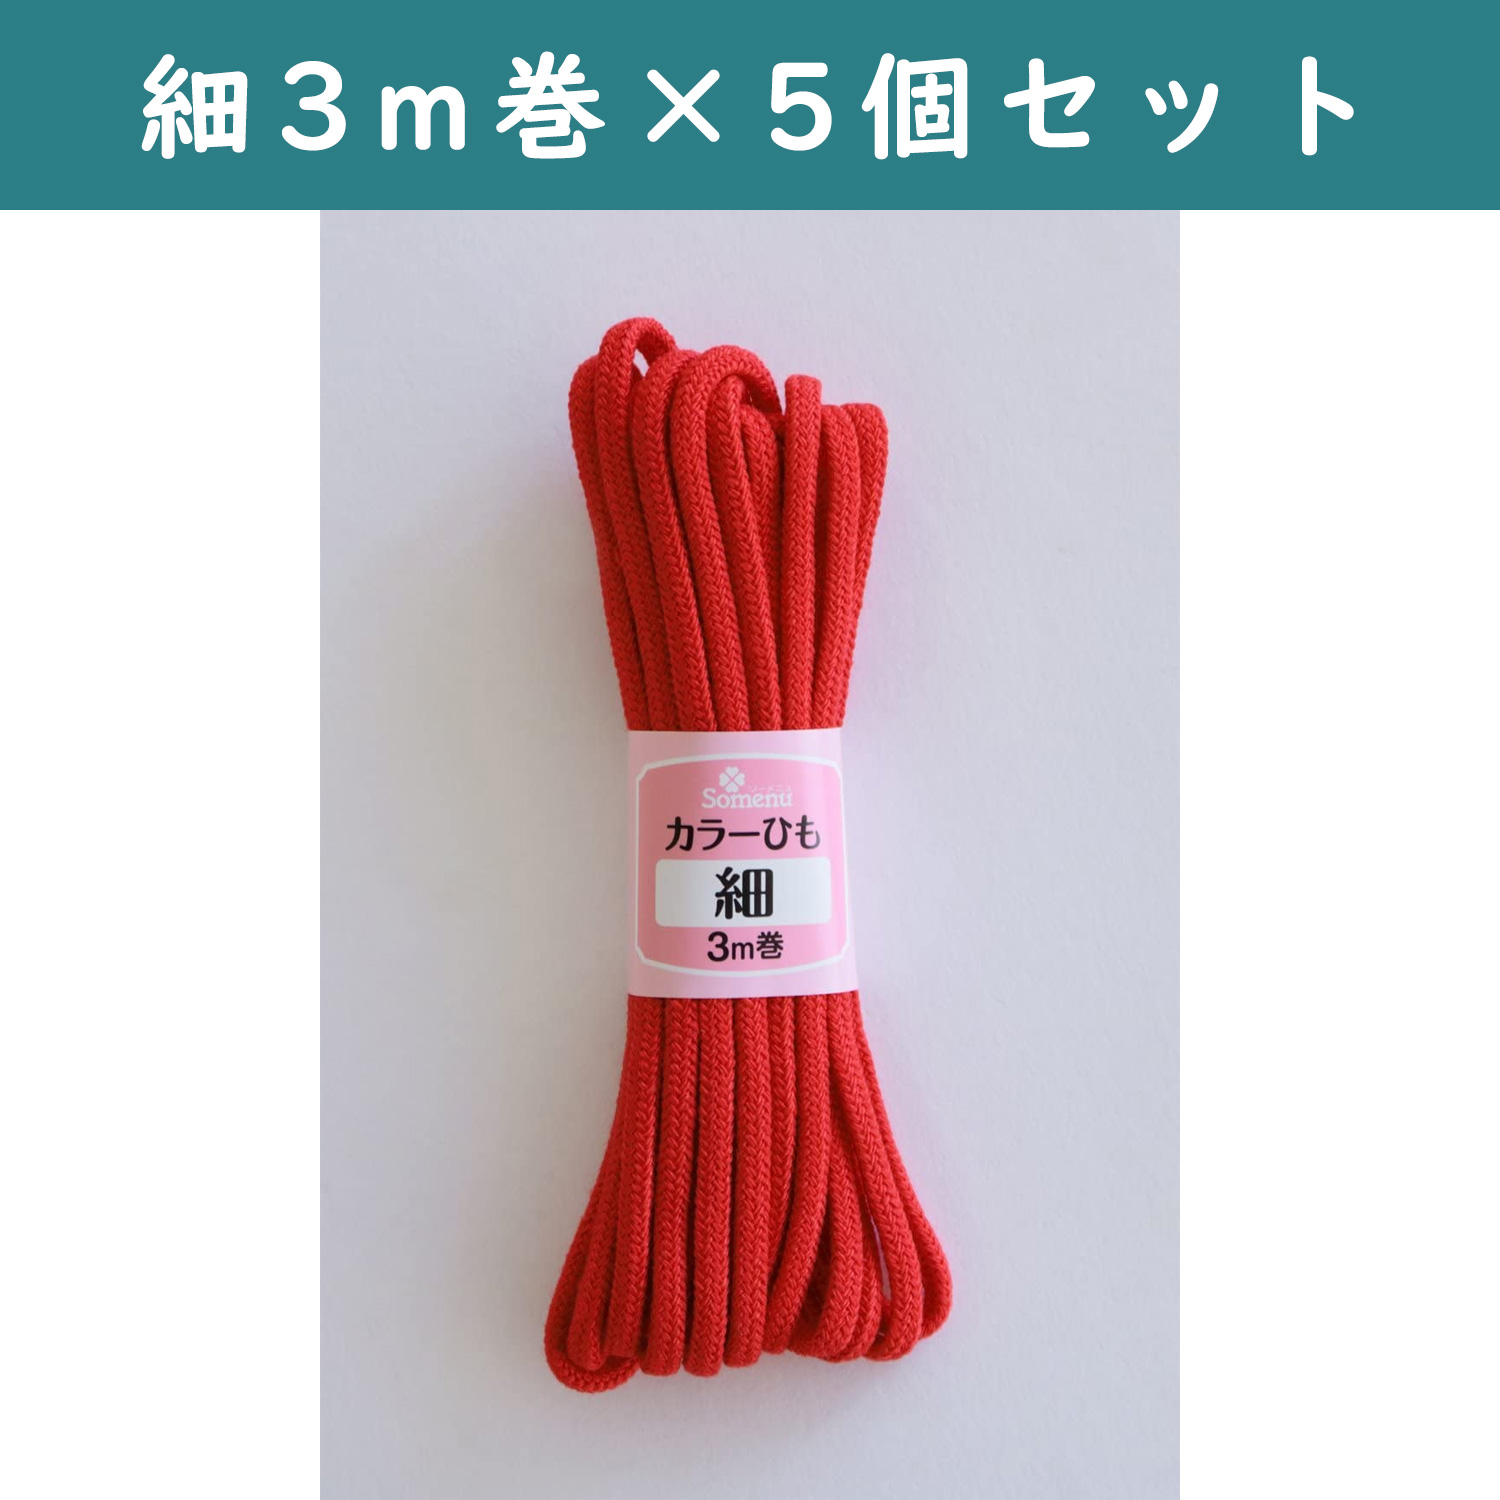 ■【5個】CL26-136-5set カラーひも 細 3m巻 赤 5個セット (セット)